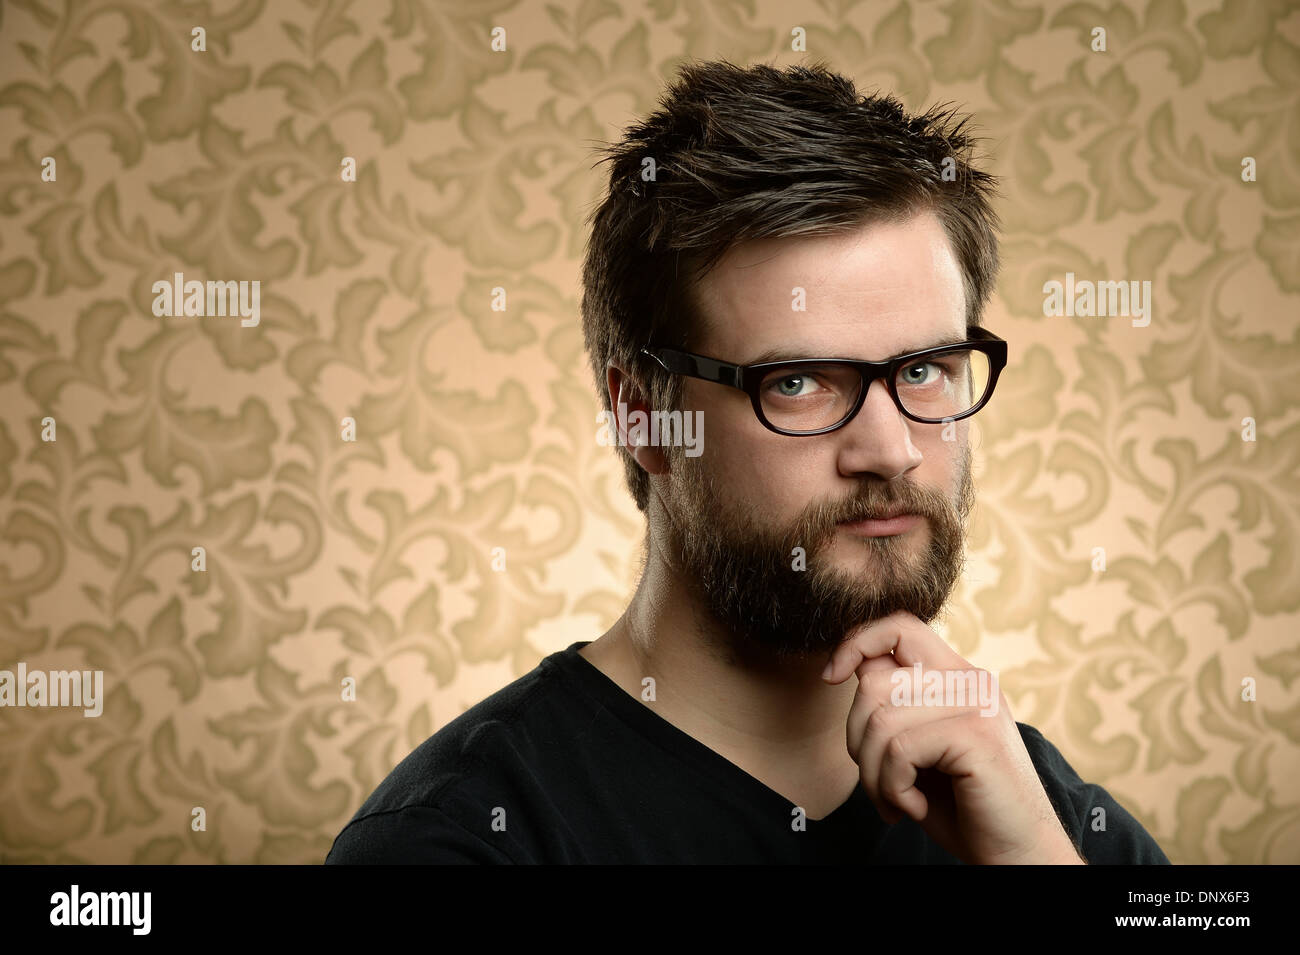 Porträt des jungen Mann mit Bart und Brille über Retro-Hintergrund Stockfoto